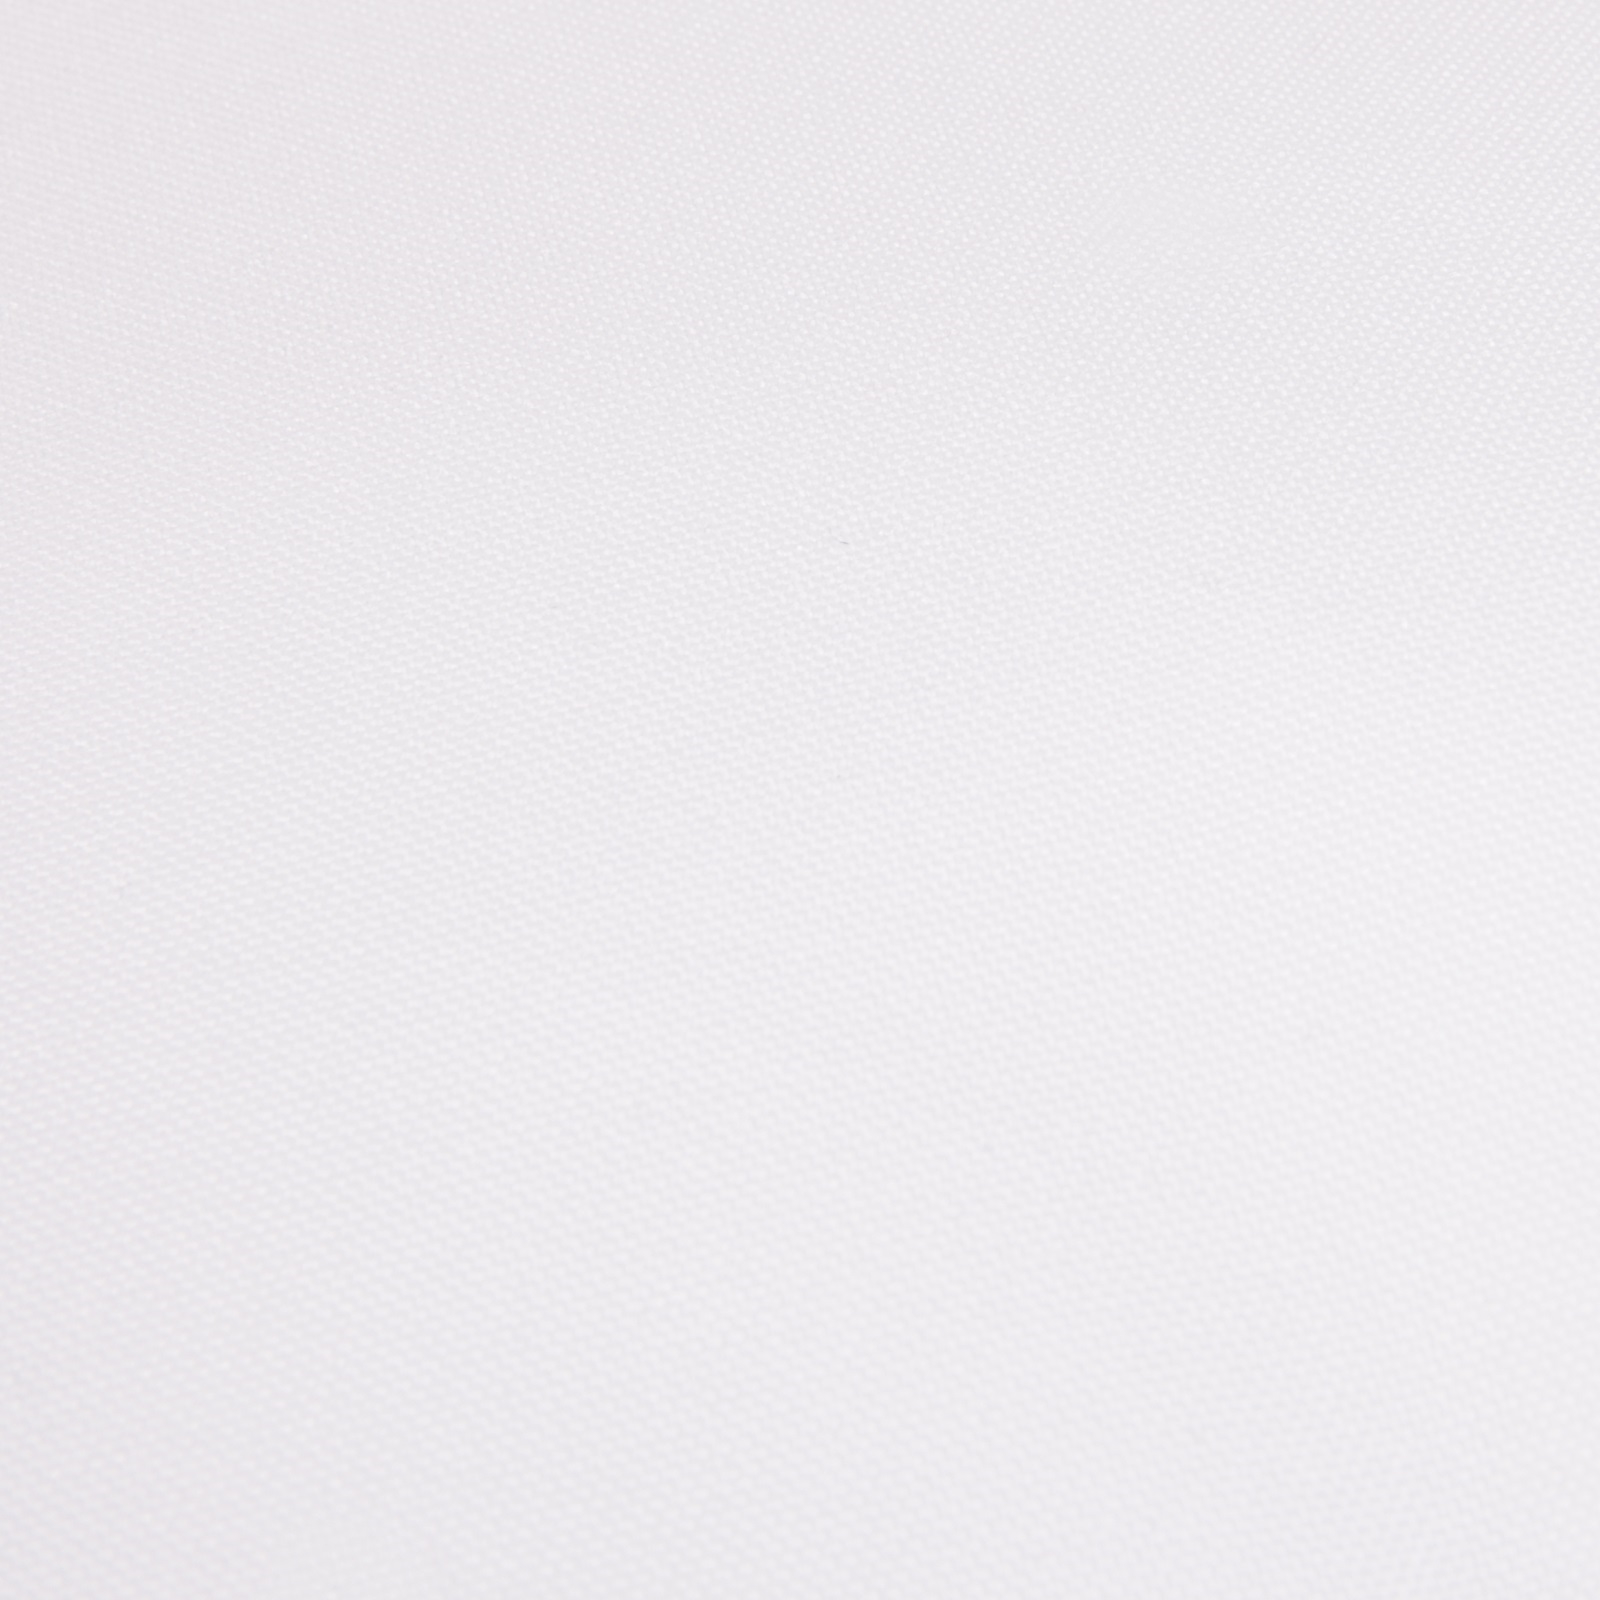 Komplettkissen Polyester-Weiß / 30x30 cm